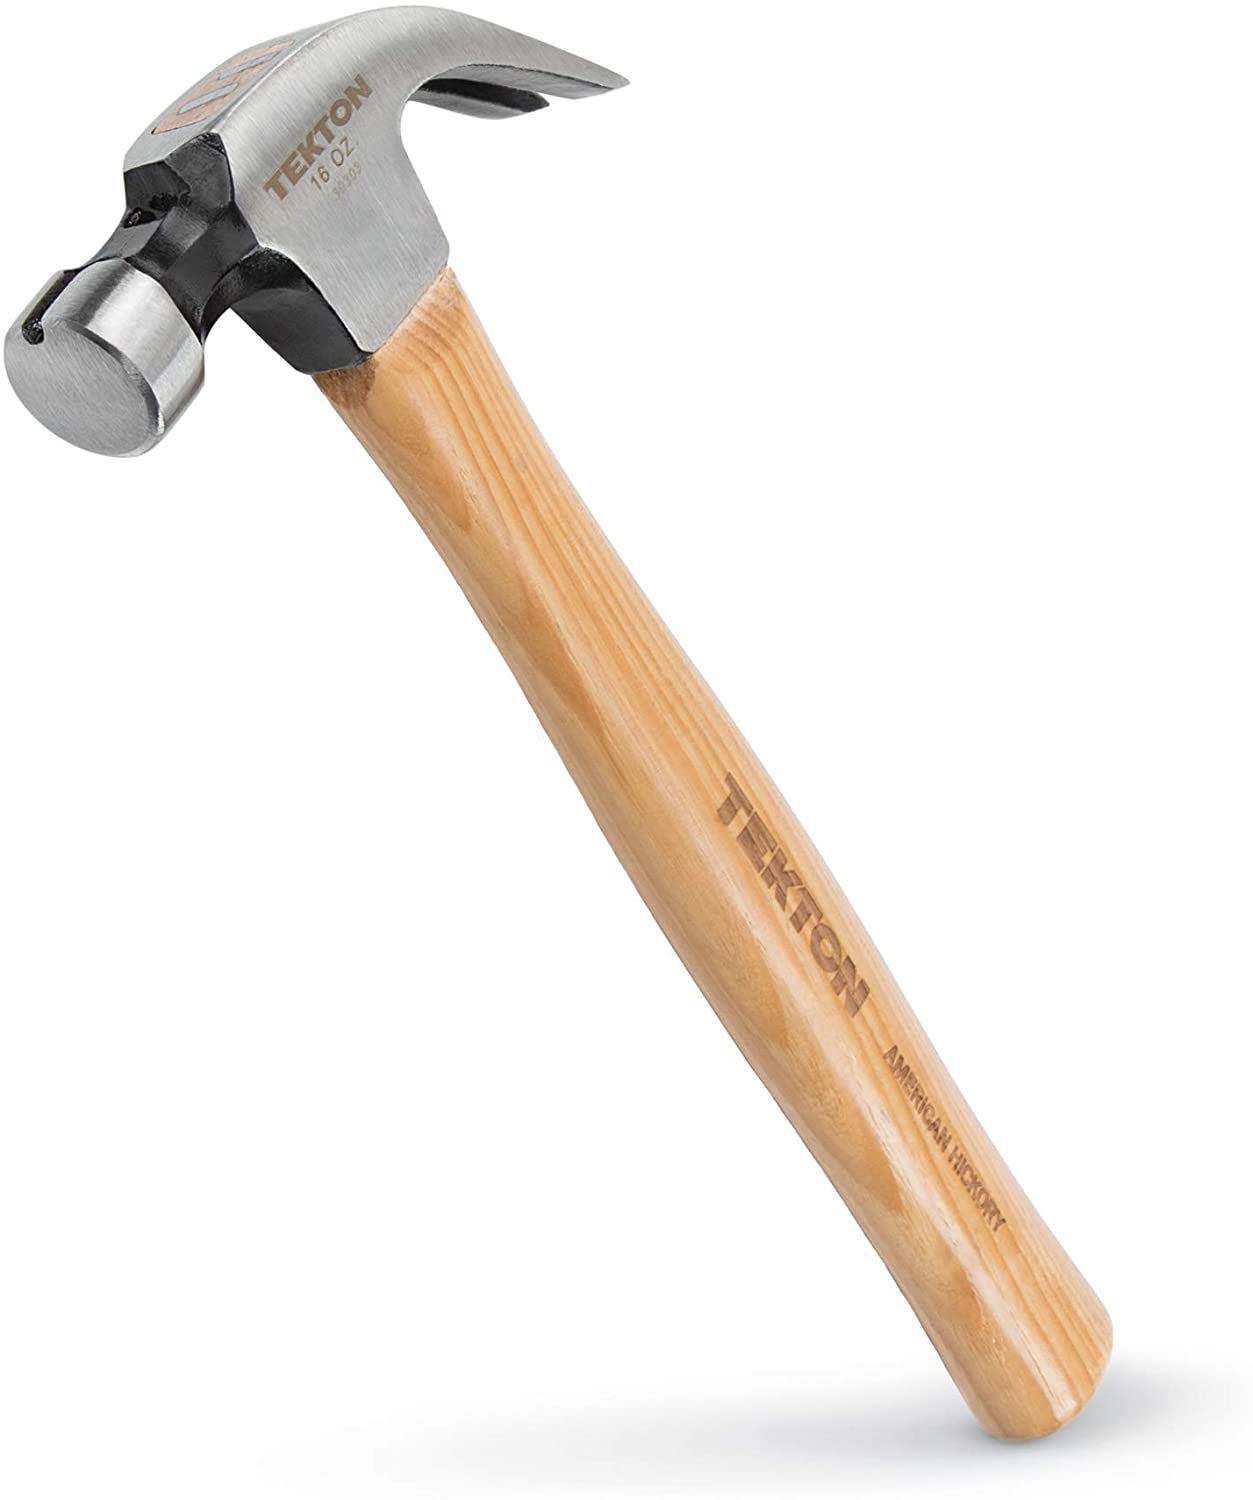 TEKTON 30303 16 oz Walnut Claw Hammer